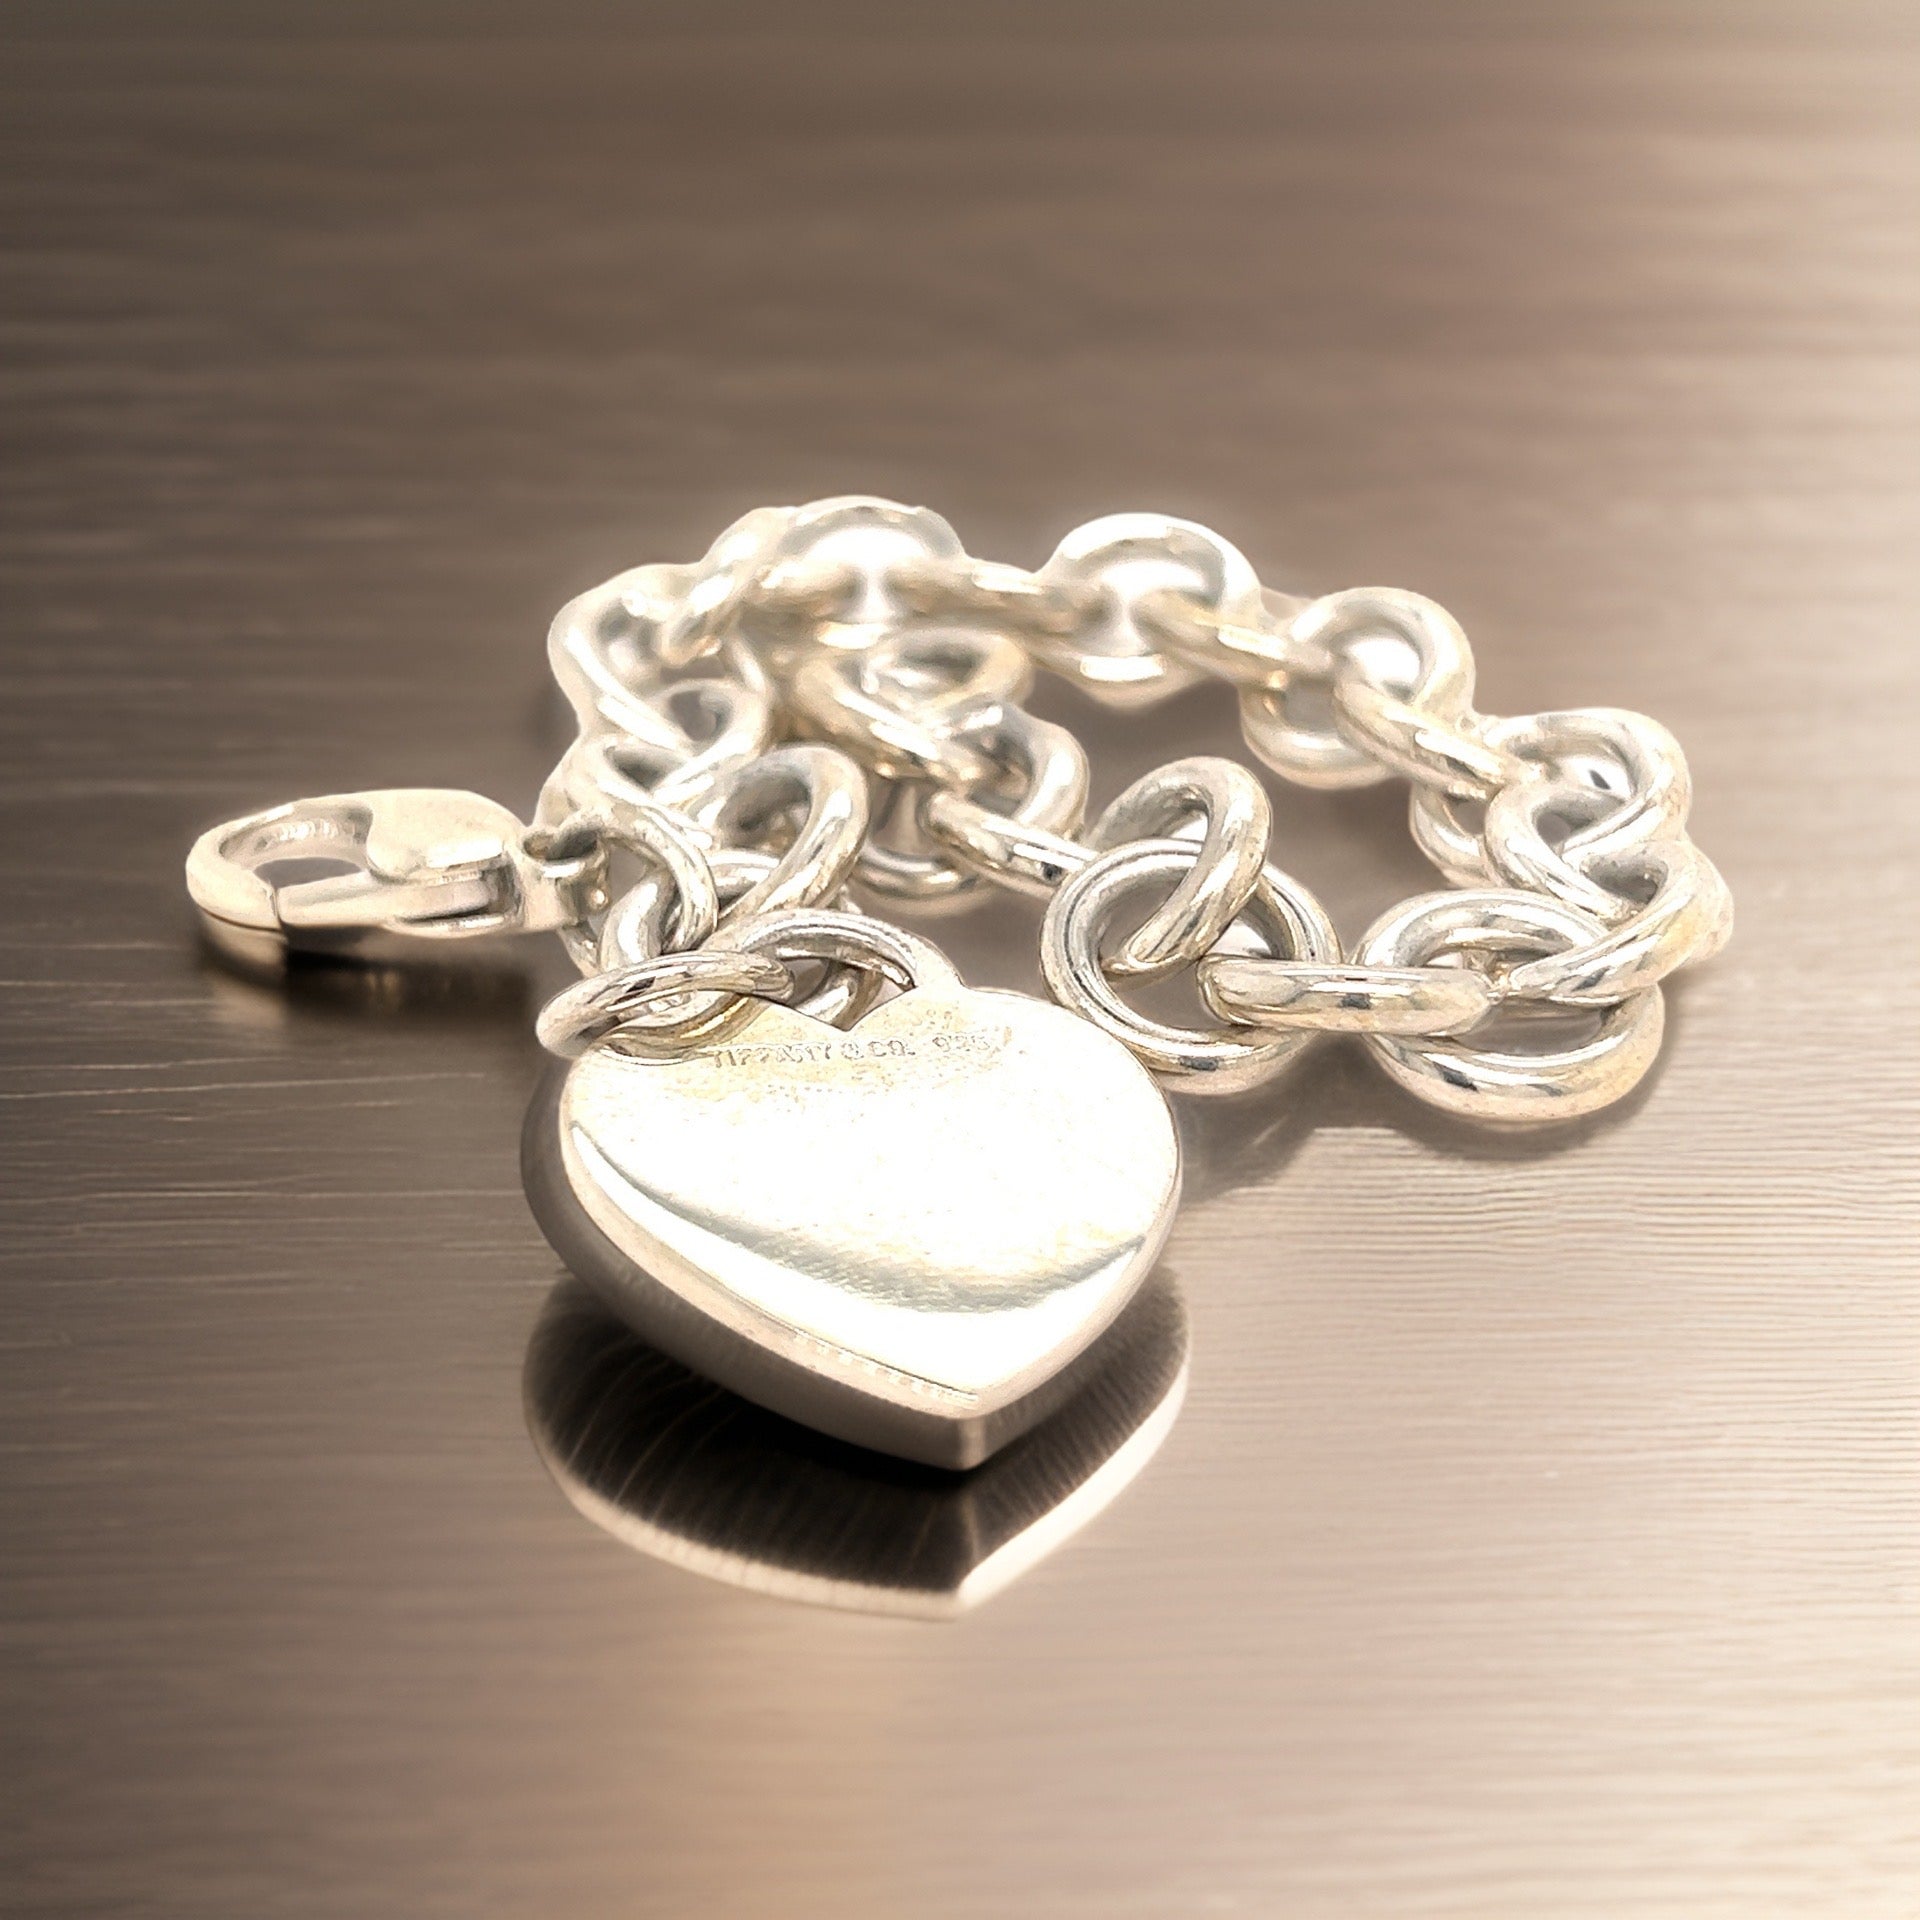 Tiffany & Co Estate Heart Bracelet 7.5" Sterling Silver TIF580 - Certified Fine Jewelry